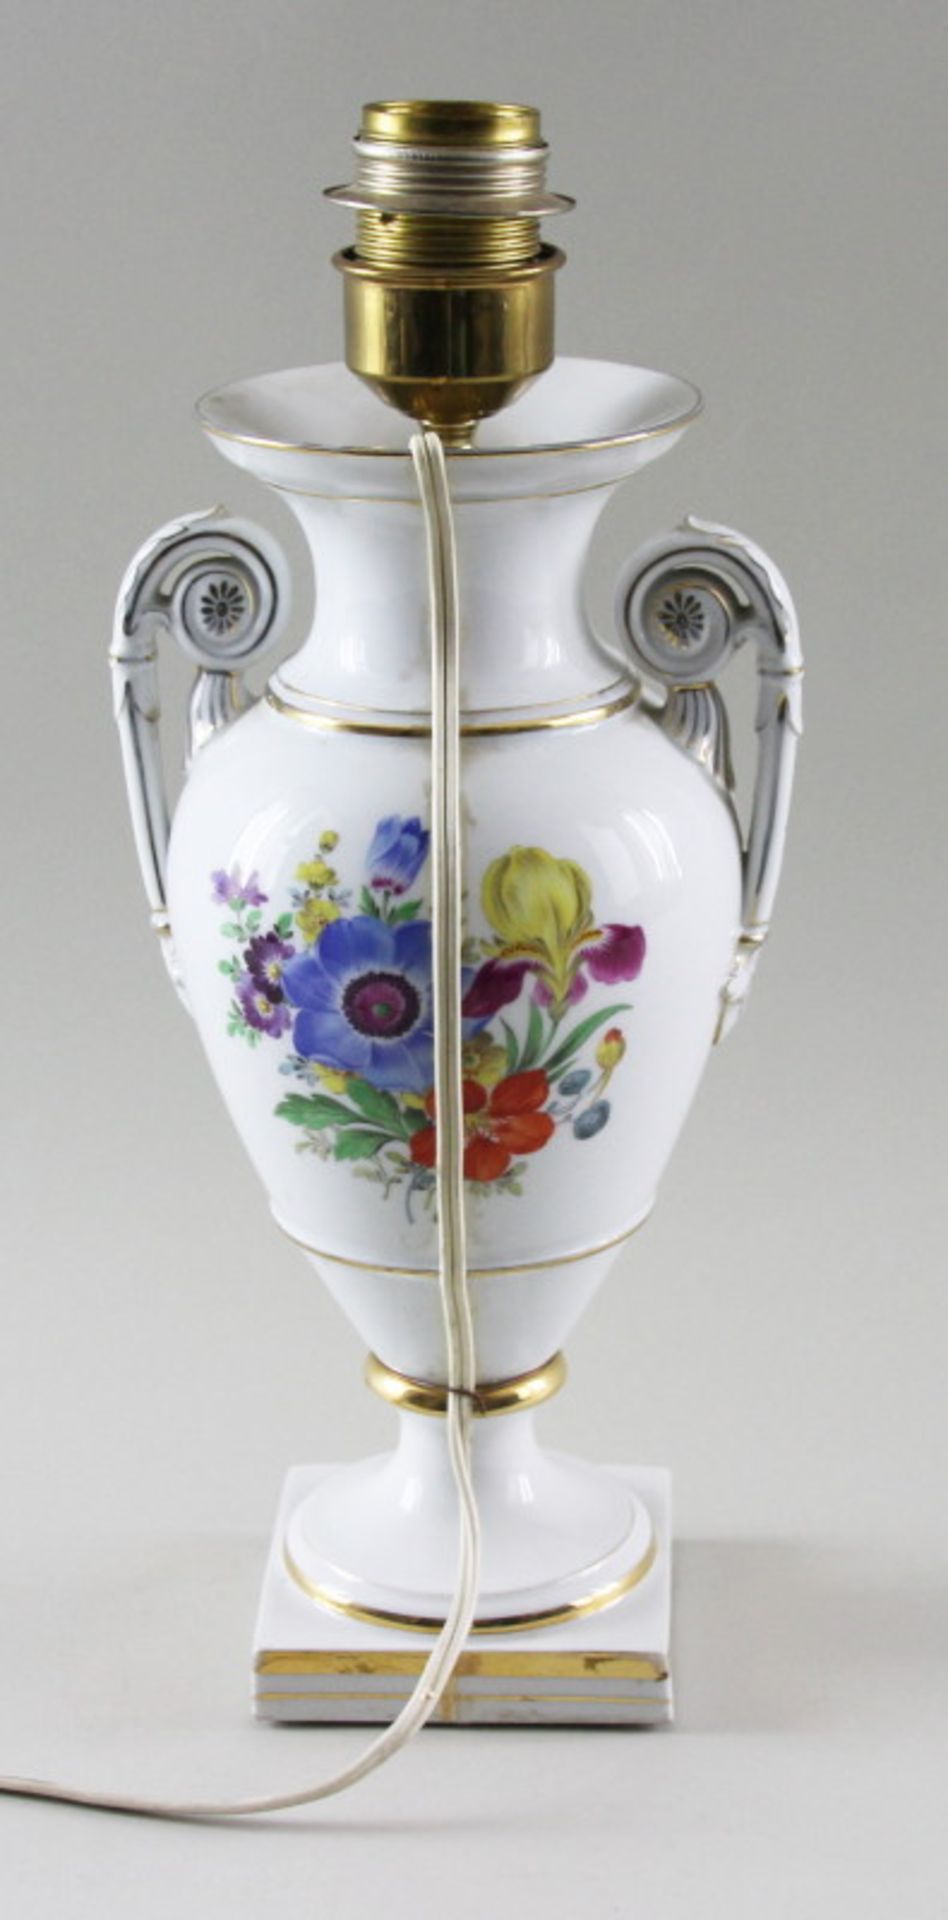 Lampenfuß, Porzellanmanufaktur Meissen, Dekor: "Deutsche Blume", 1. Wahl, 20. Jhd. - Image 2 of 3